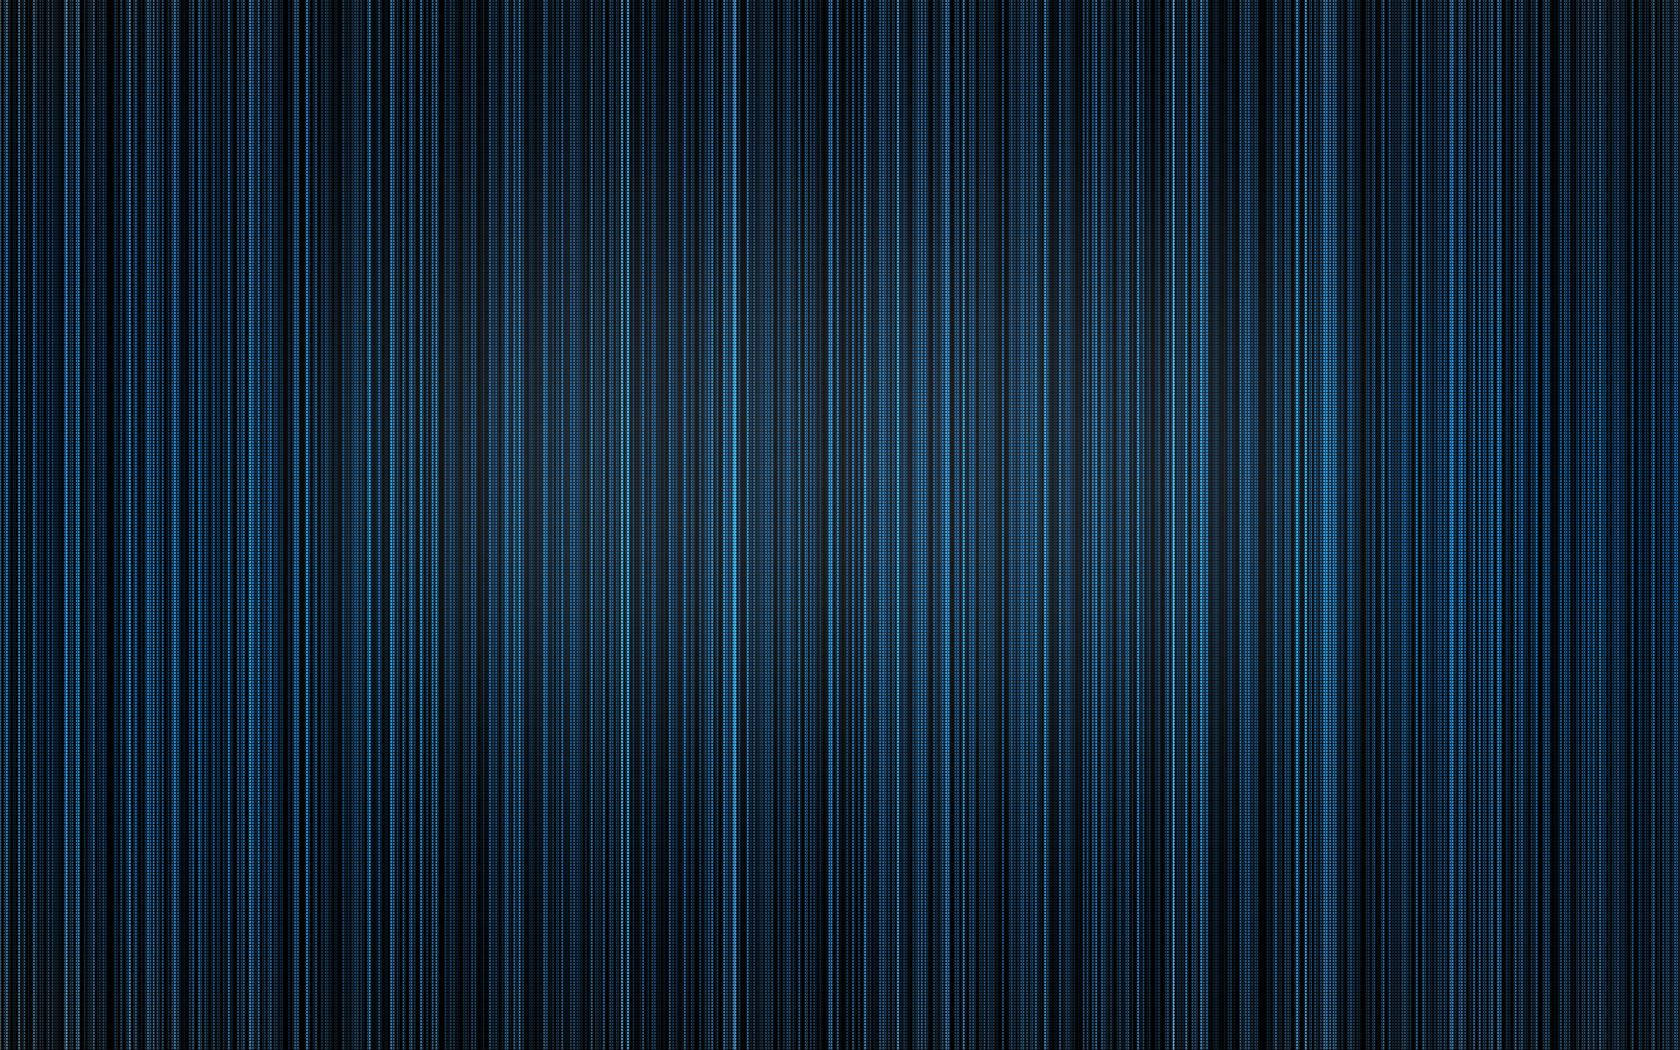 Indigo Striped Texture Background